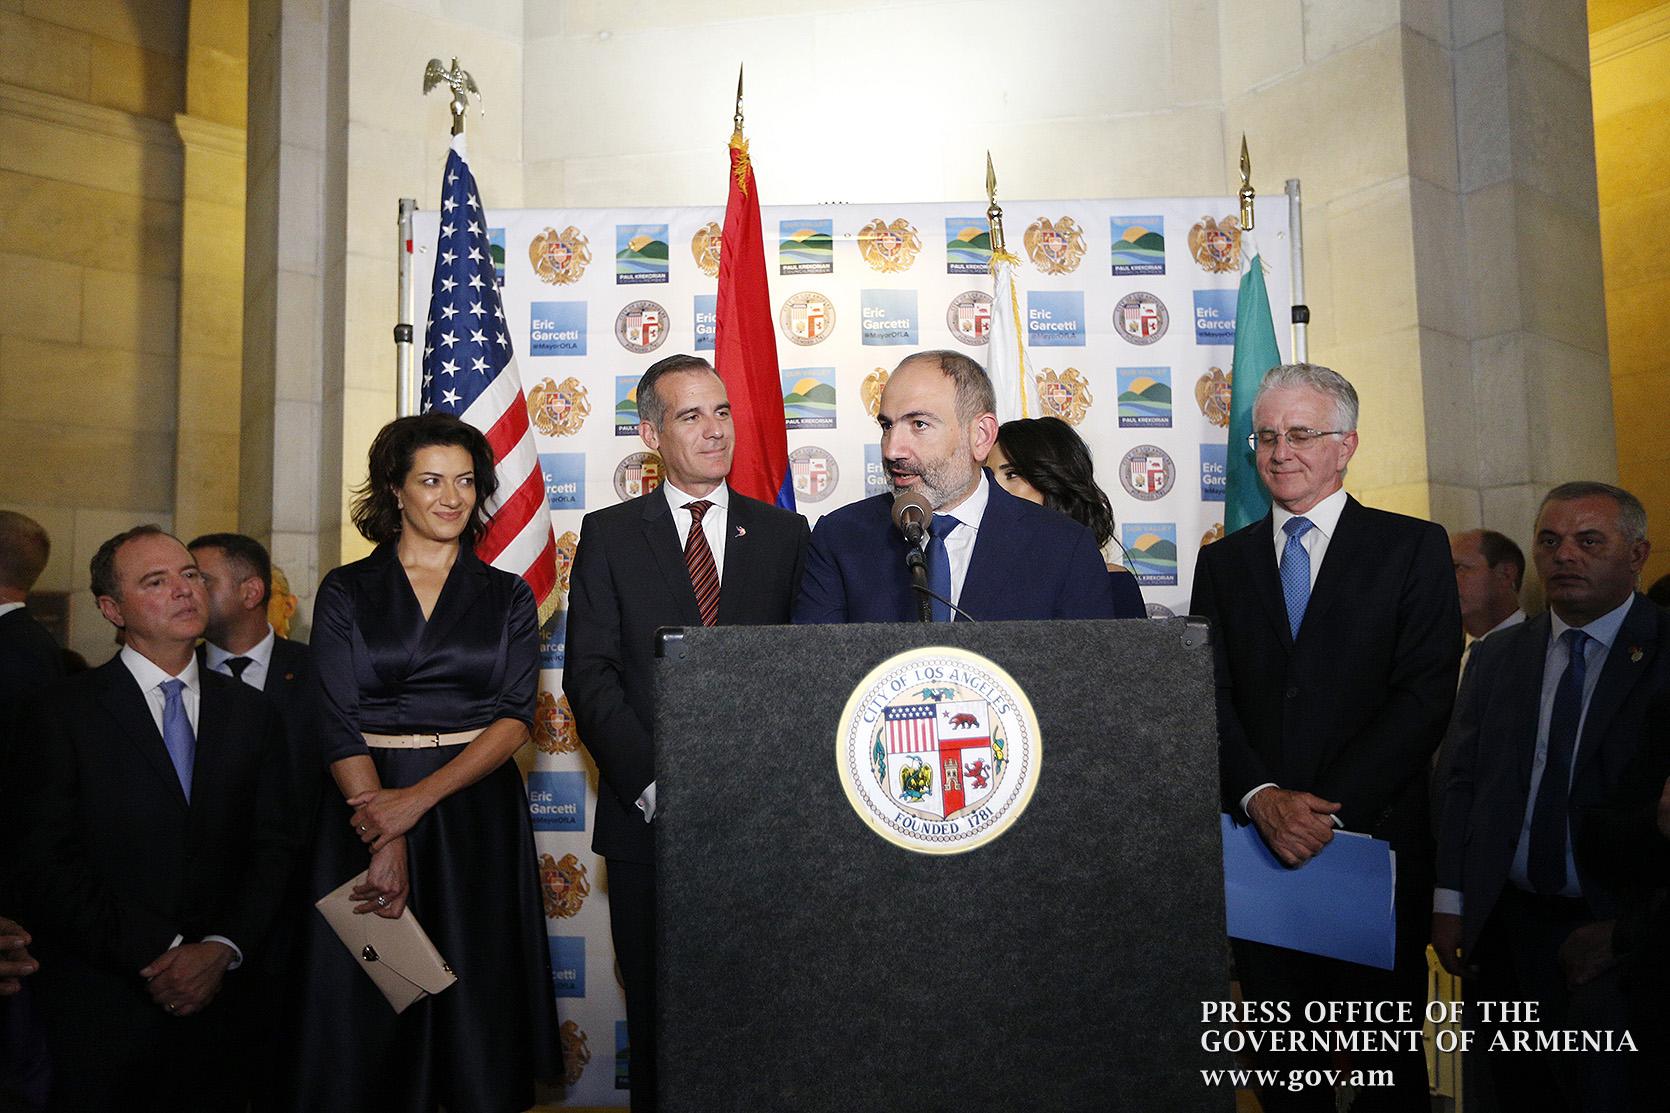 Лос-Анджелес будет основным центром углубления армяно-калифорнийского сотрудничества: Никол Пашинян на официальном приеме в мэрии Лос-Анджелеса